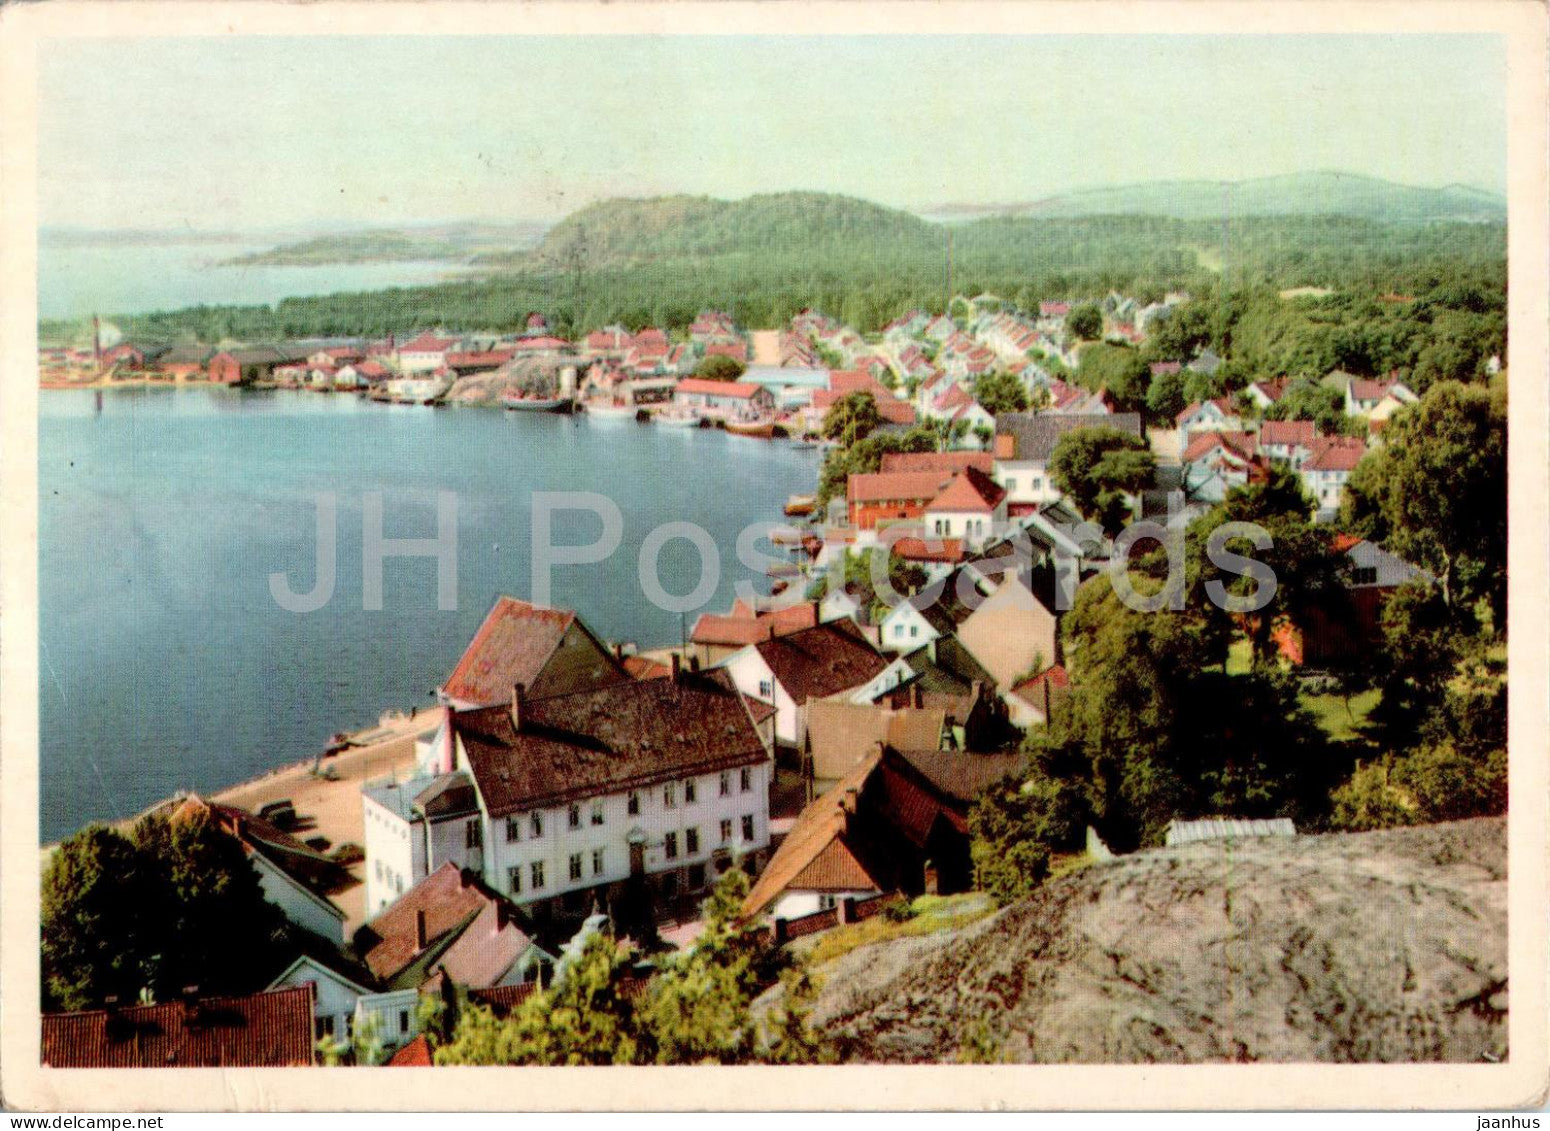 Mandal - old postcard - 1956 - Norway - used